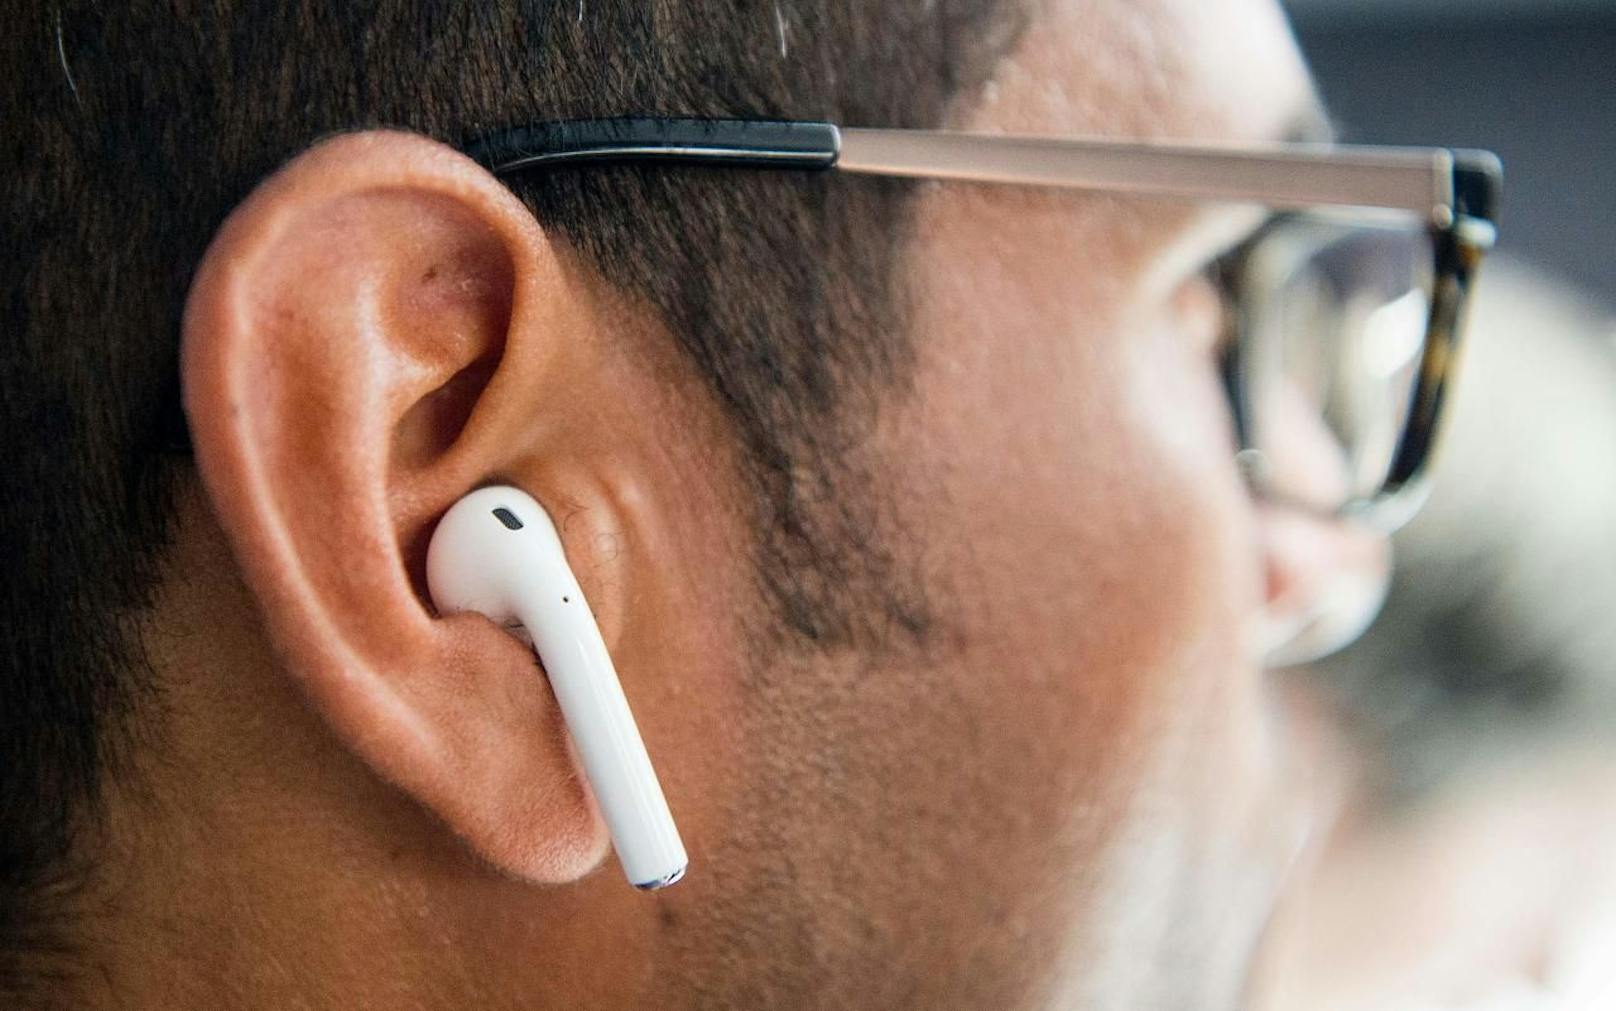 Apple Airpod im Ohr eines Mannes. Symbolfoto.